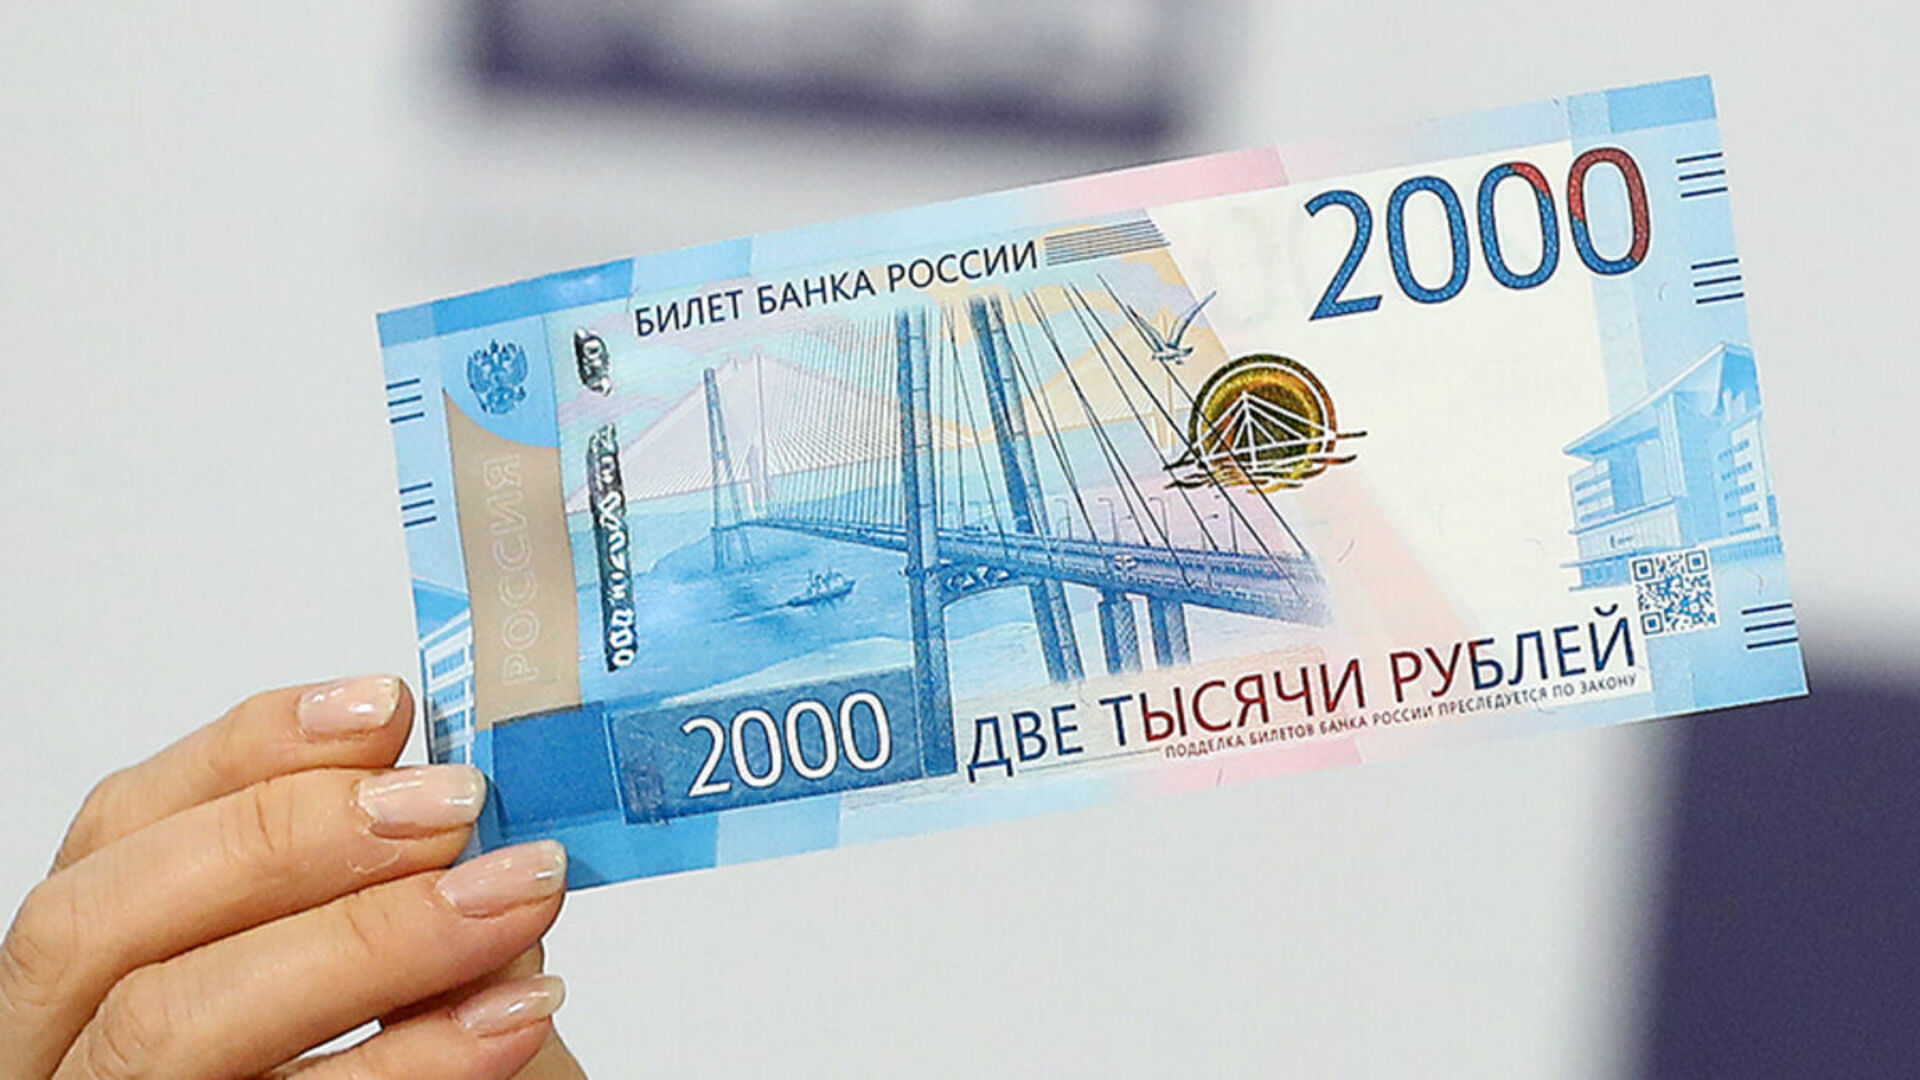 2000 рублей на карту. 2000 Рублей. Купюра 2000 рублей. 2000 Тысячи рублей. 2 Тысячи рублей.